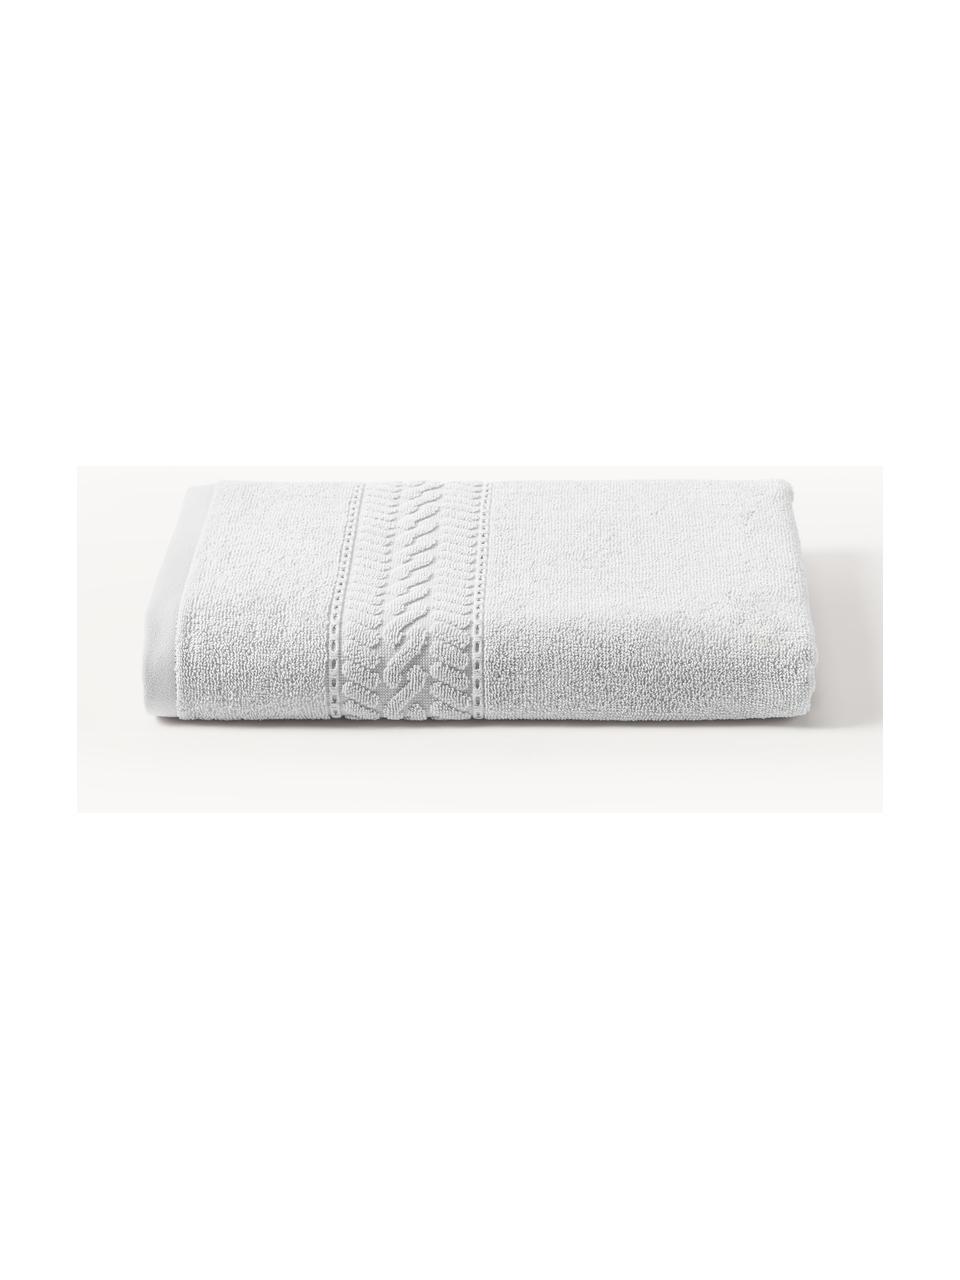 Handtuch Cordelia in verschiedenen Grössen, 100 % Baumwolle, Hellgrau, Handtuch, B 50 x L 100 cm, 2 Stück